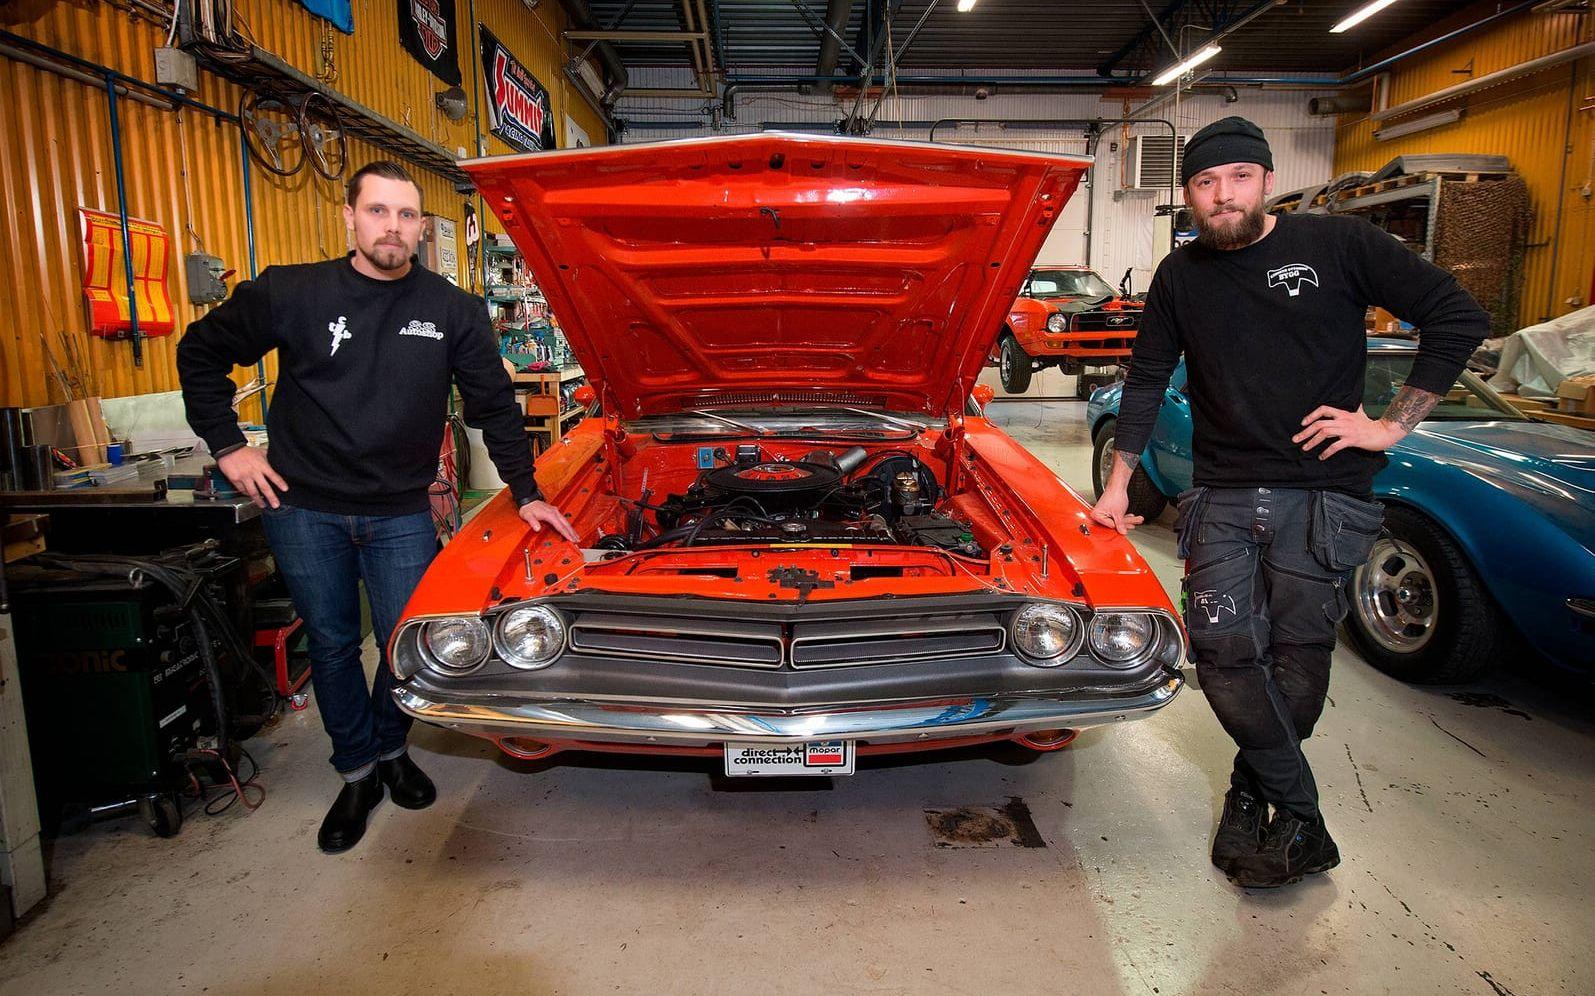 Säljs i USA. Simon och Tobias är snart klara med detta orangea glänsande projekt i form av en Dodge Challenger -71. Bilen kommer att säljas på aktion i Florida 31 mars.